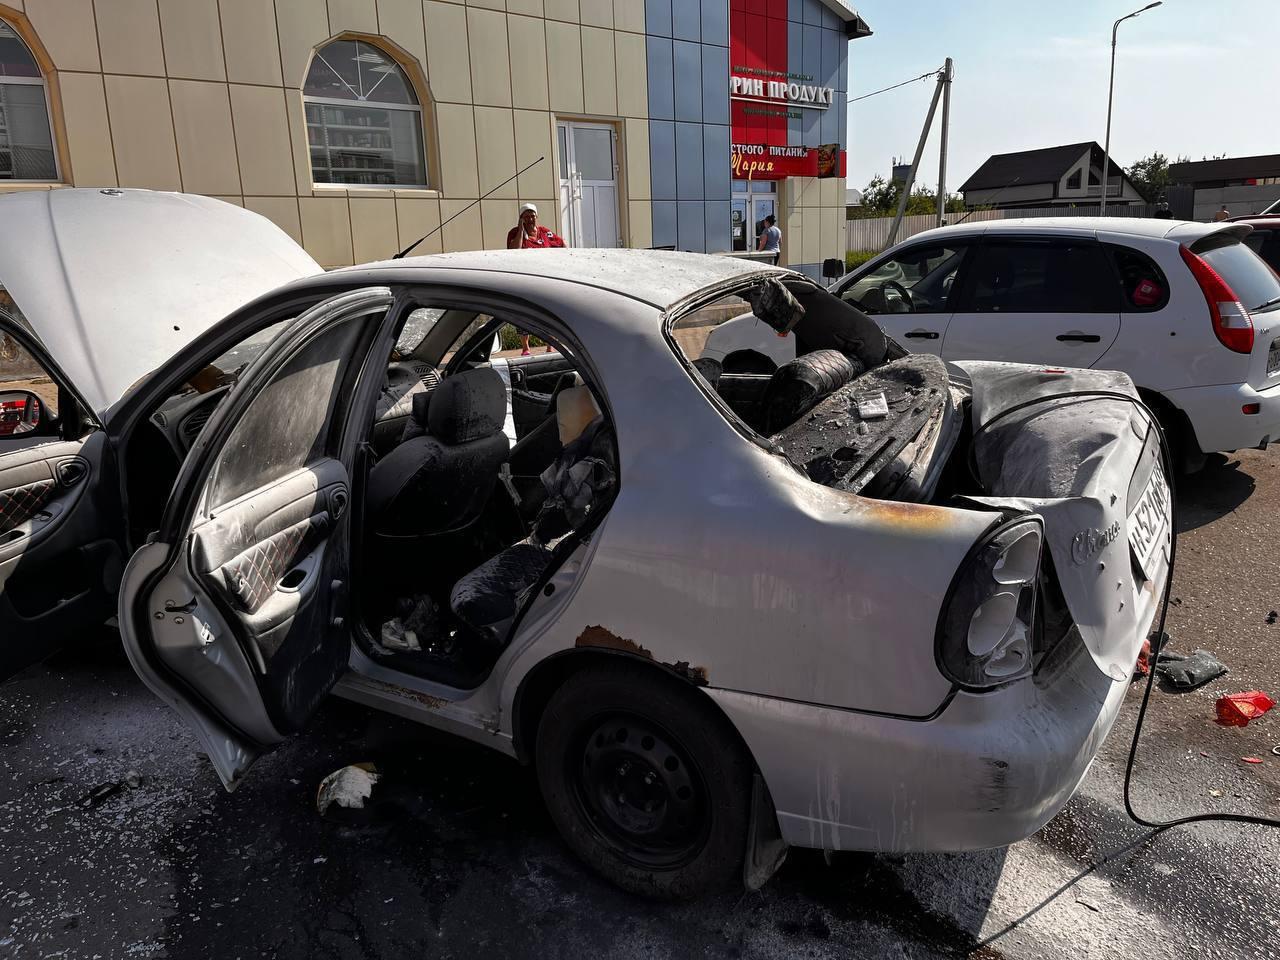 Момент атаки беспилотника по автомобилю в Белгородской области сегодня утром.